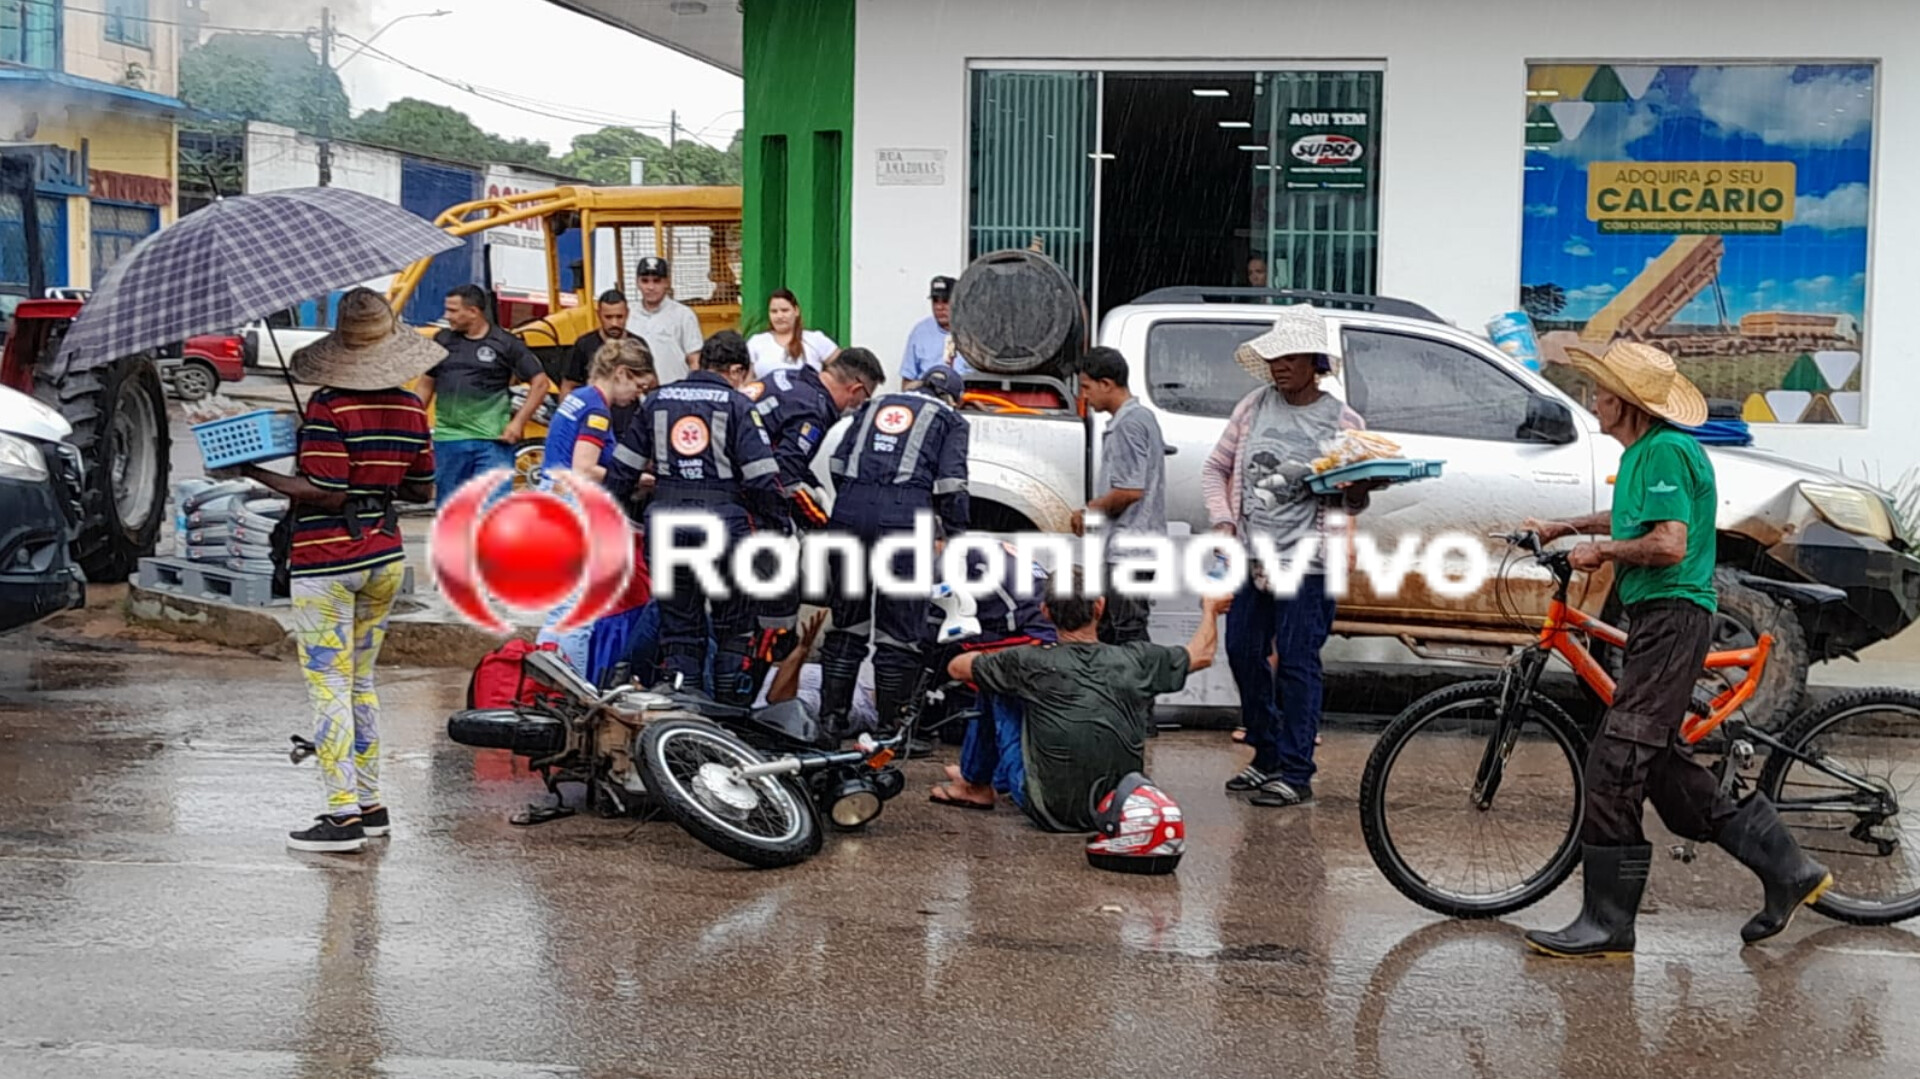 NA CHUVA: Dois motociclistas ficam com ferimentos após grave acidente em Porto Velho 